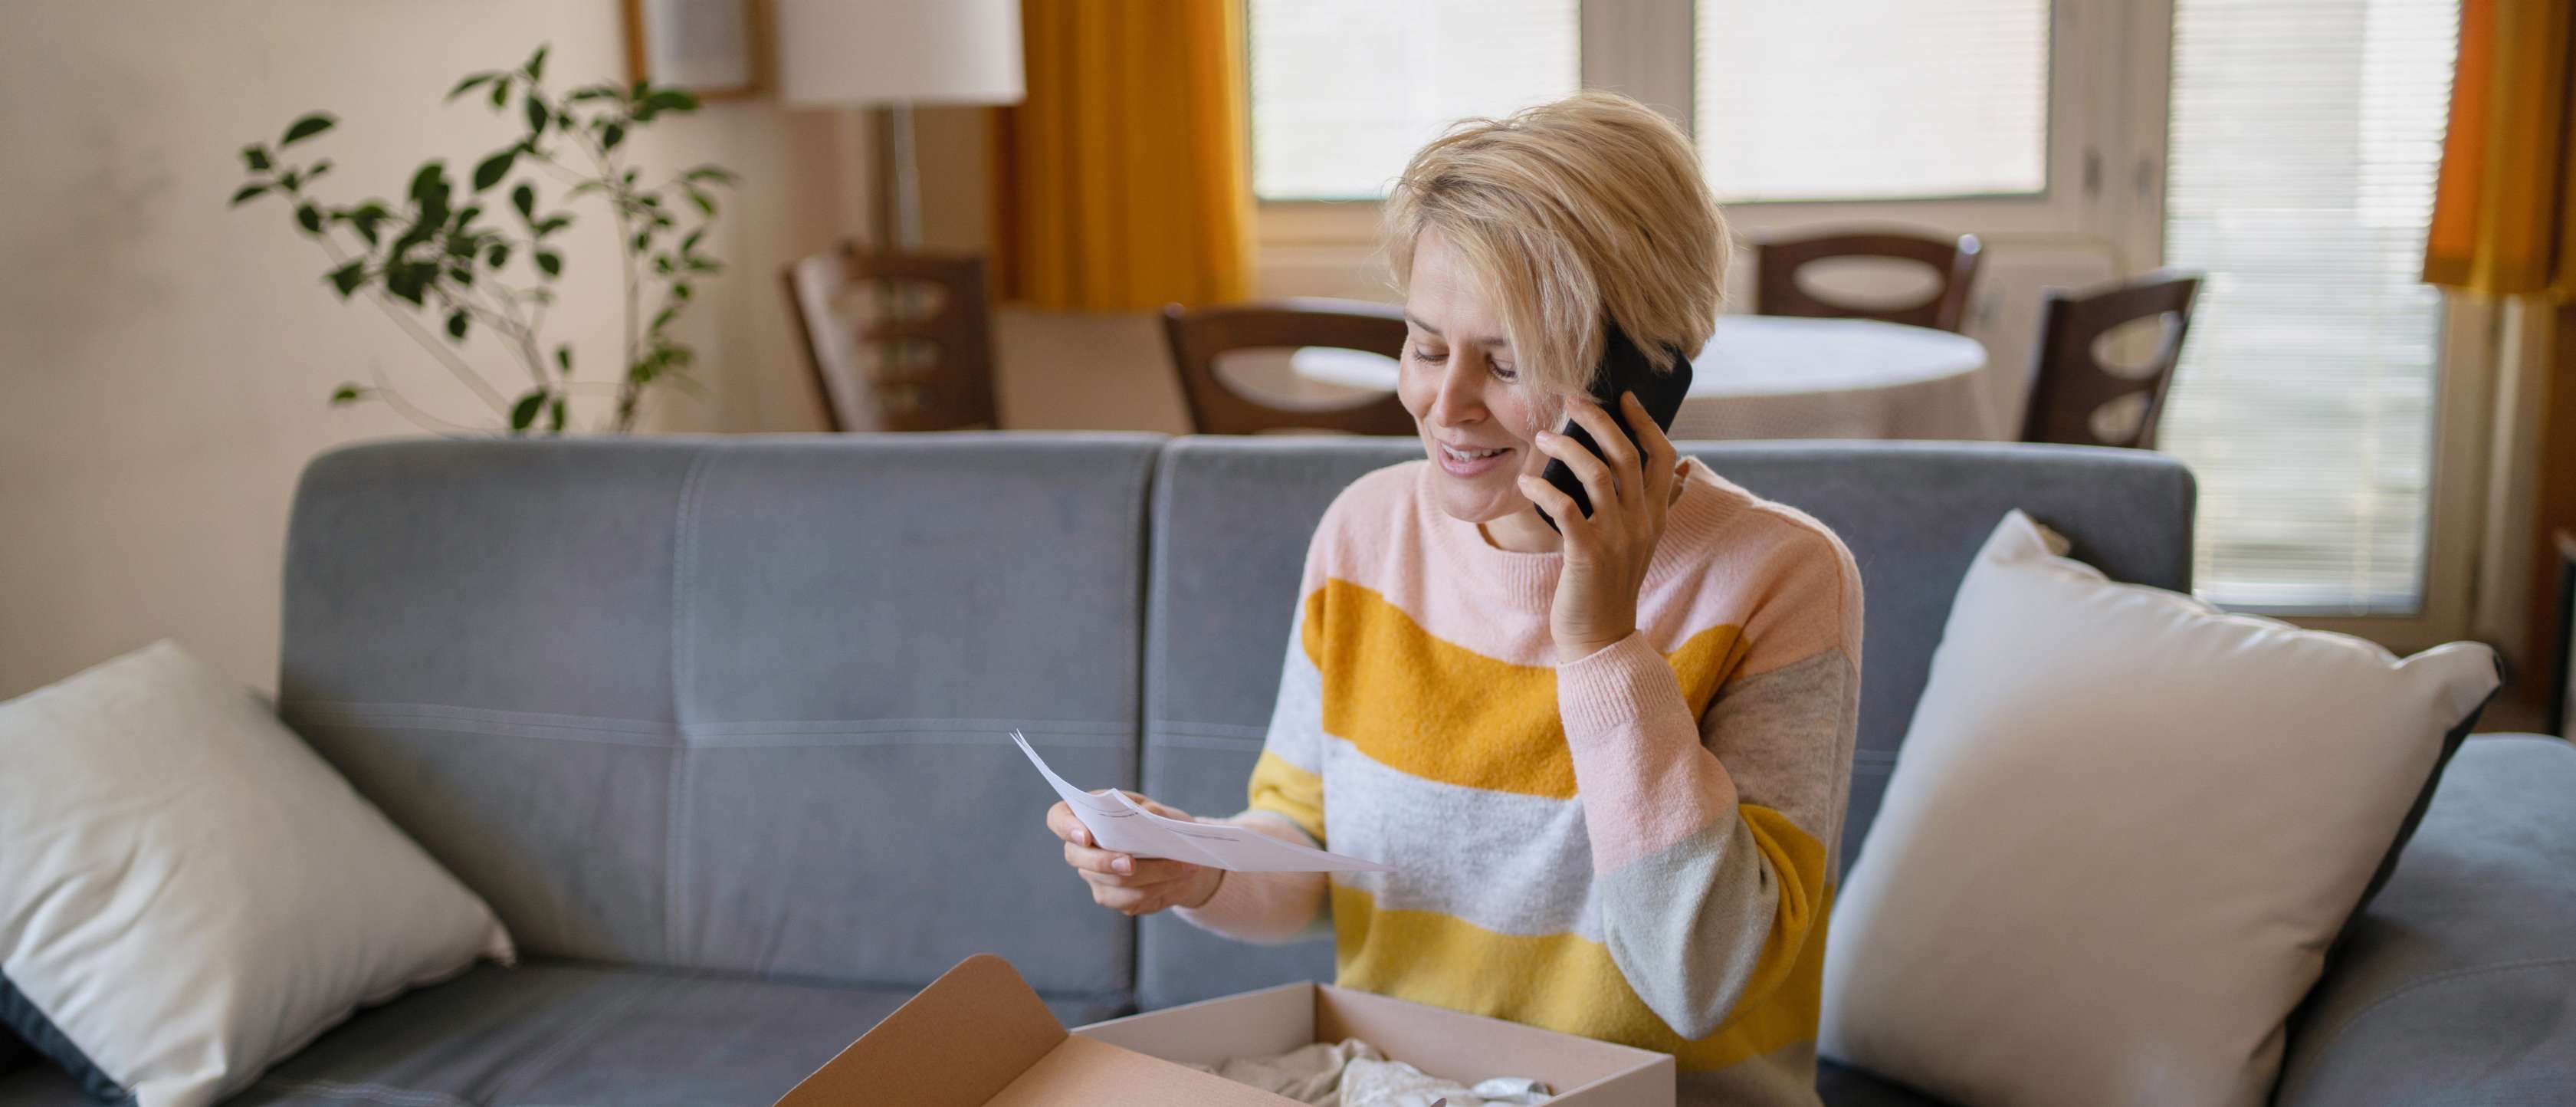 Garantie und Gewährleistung: Eine Frau sitzt mit einem Paket auf dem Sofa und telefoniert